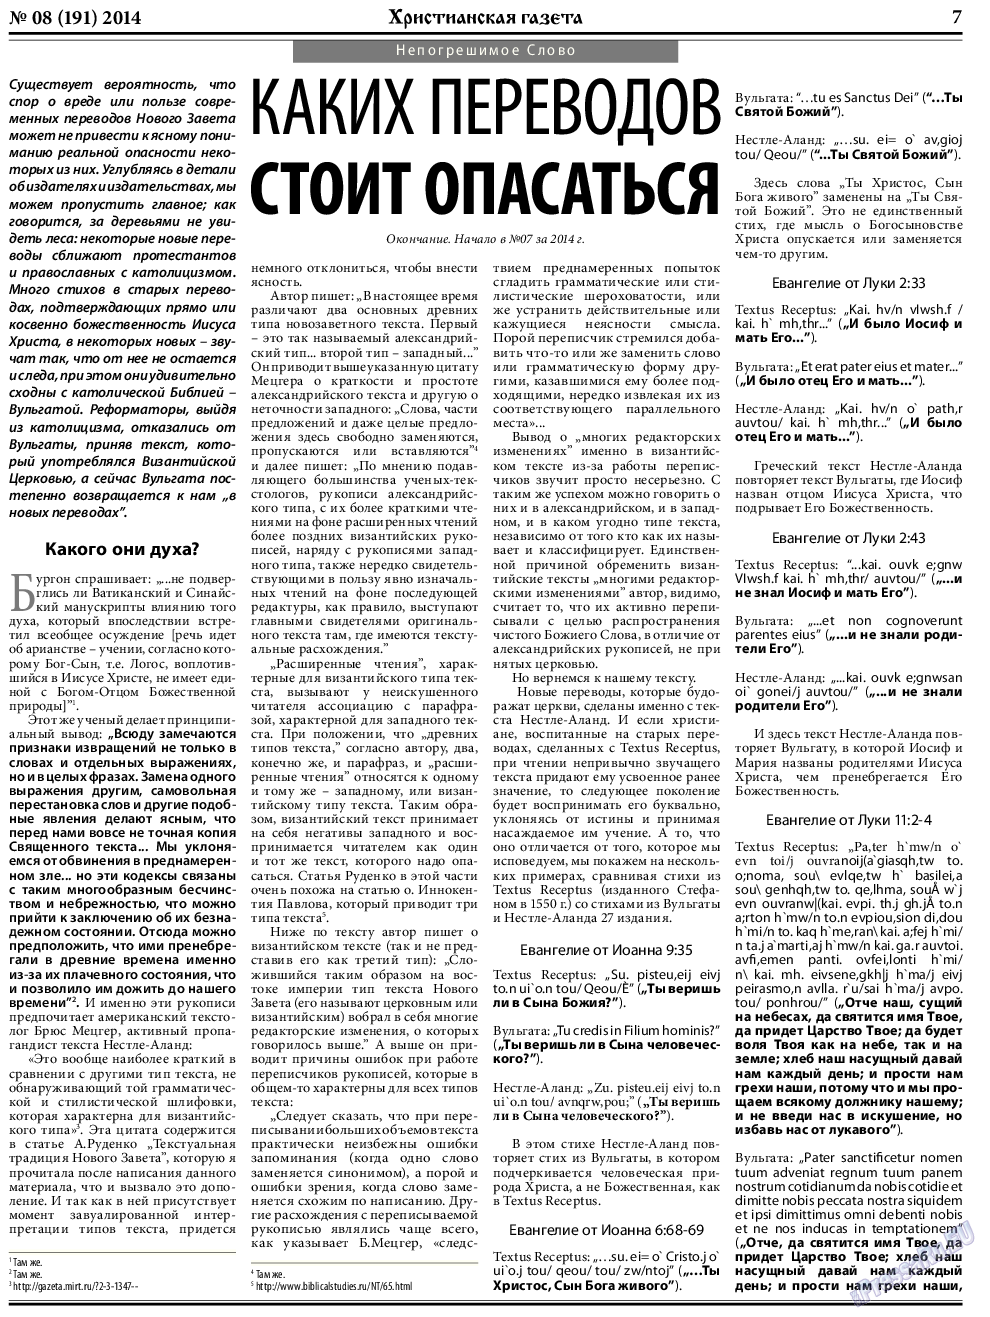 Христианская газета, газета. 2014 №8 стр.7